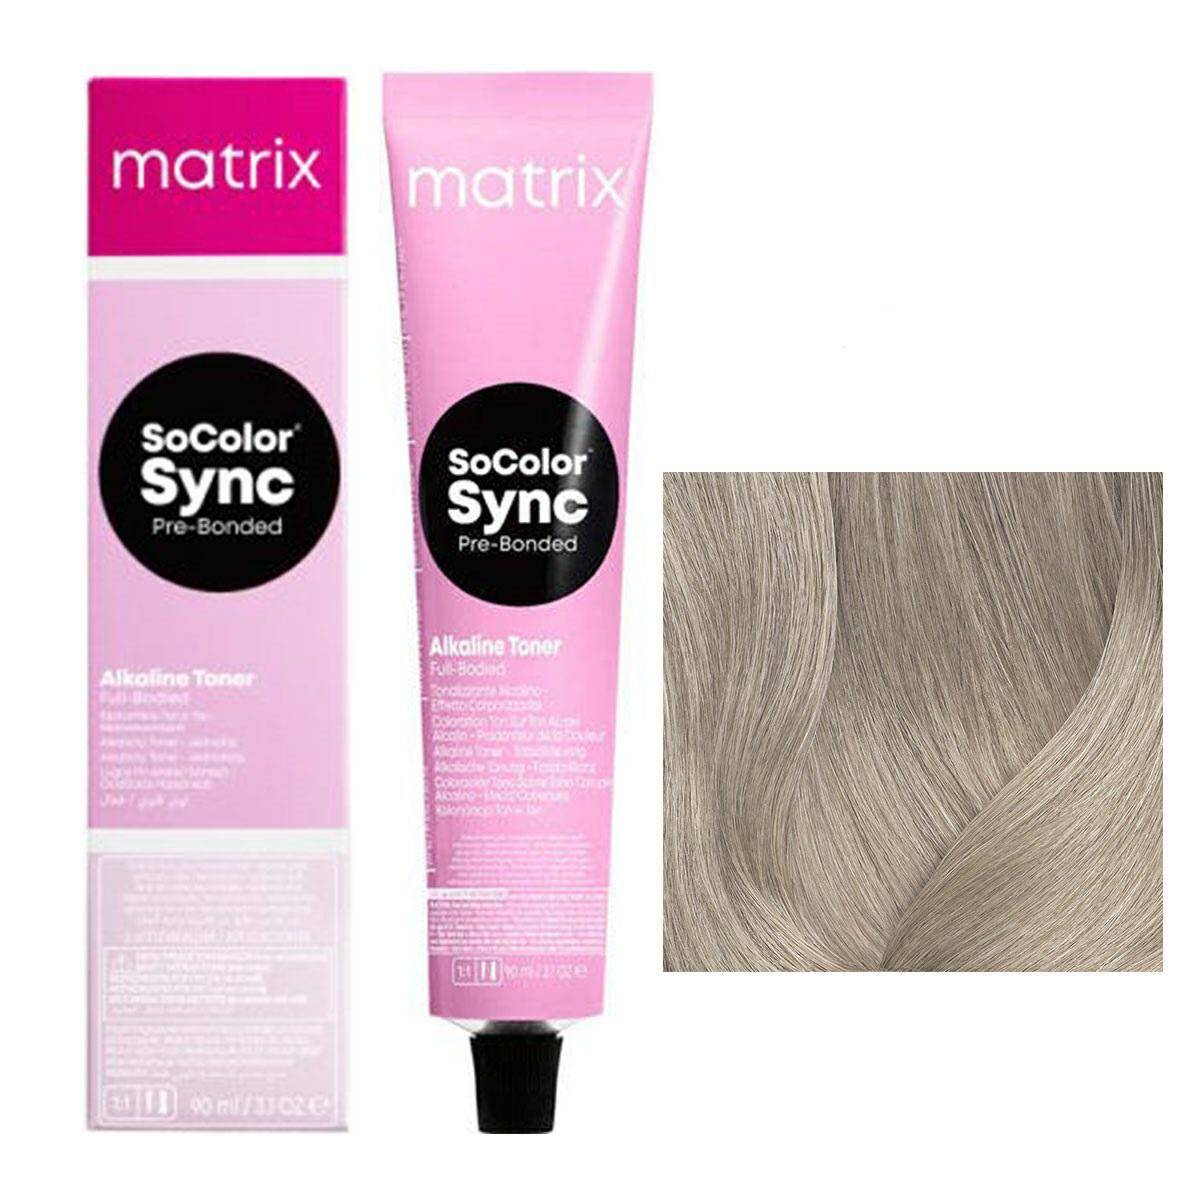 Matrix SoColor Sync Pre-Bonded Farba do włosów - 10N Extra jasny blond naturalny, półtrwała koloryzacja ton w ton 90ml